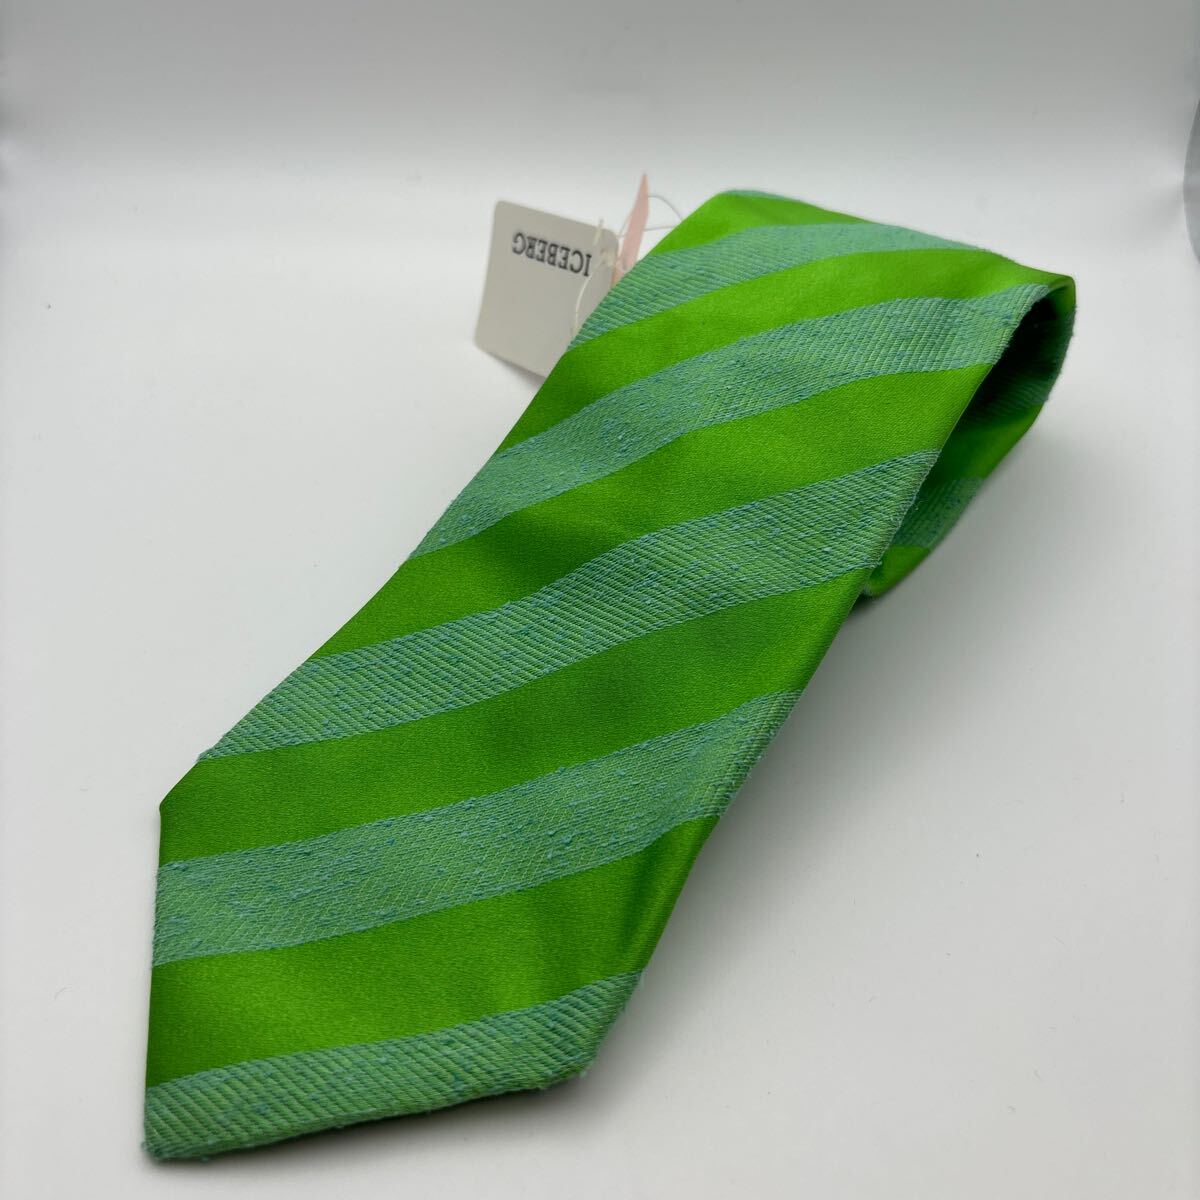  не использовался ICEBERG Iceberg галстук шелк olizonti с биркой Италия производства ITALY наклонный полоса желтый зеленый 2 класса товар Vintage 